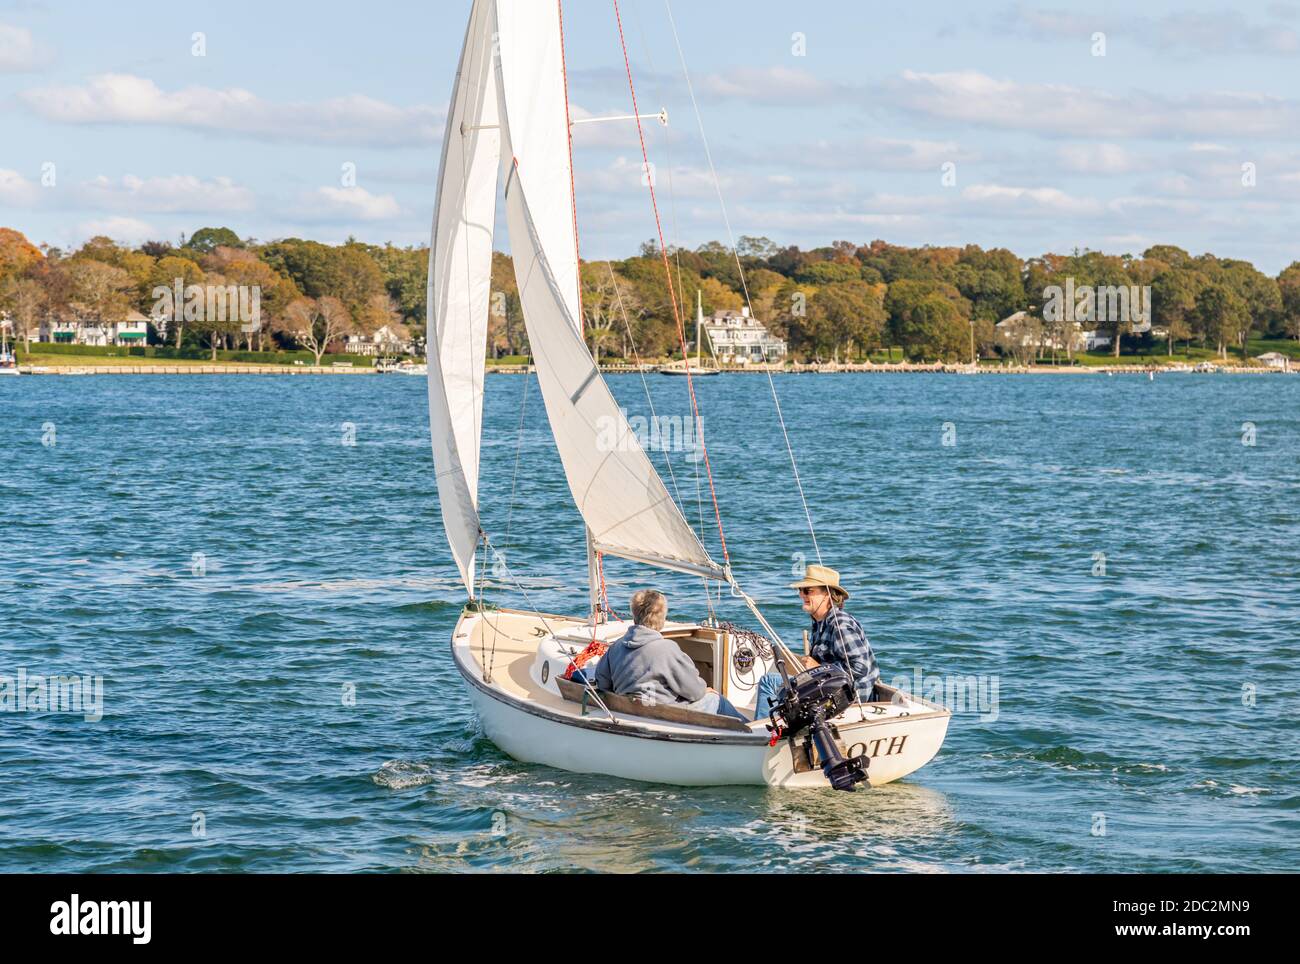 A couple sailing a small sail boat near Dering Harbor, NY Stock Photo